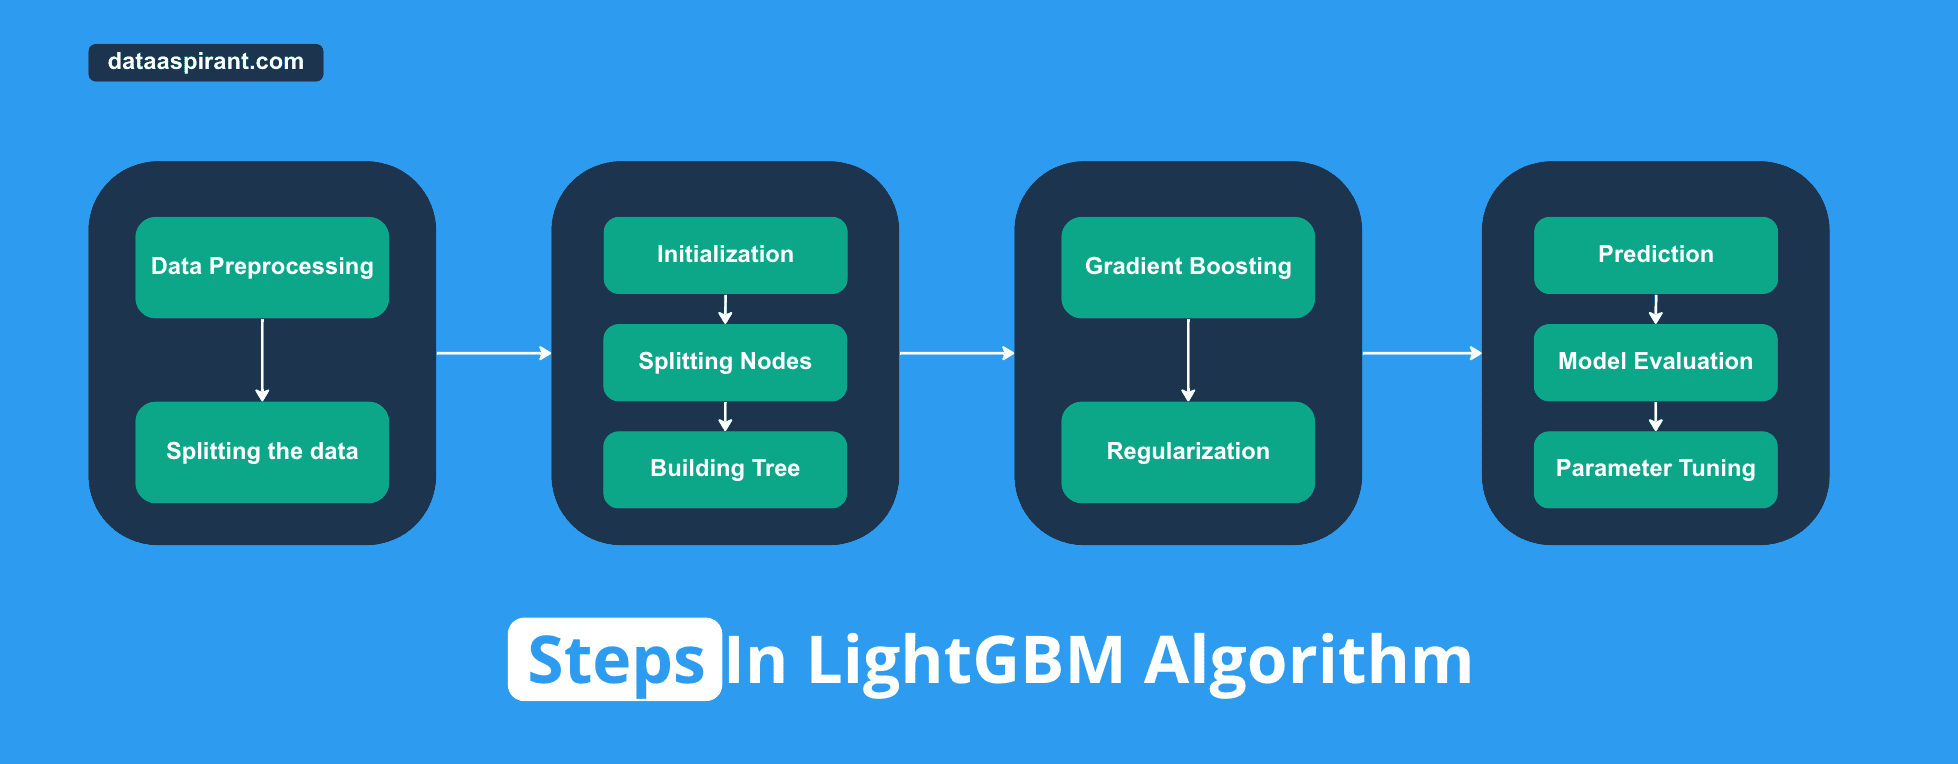 Steps in LightGBM Algorithm